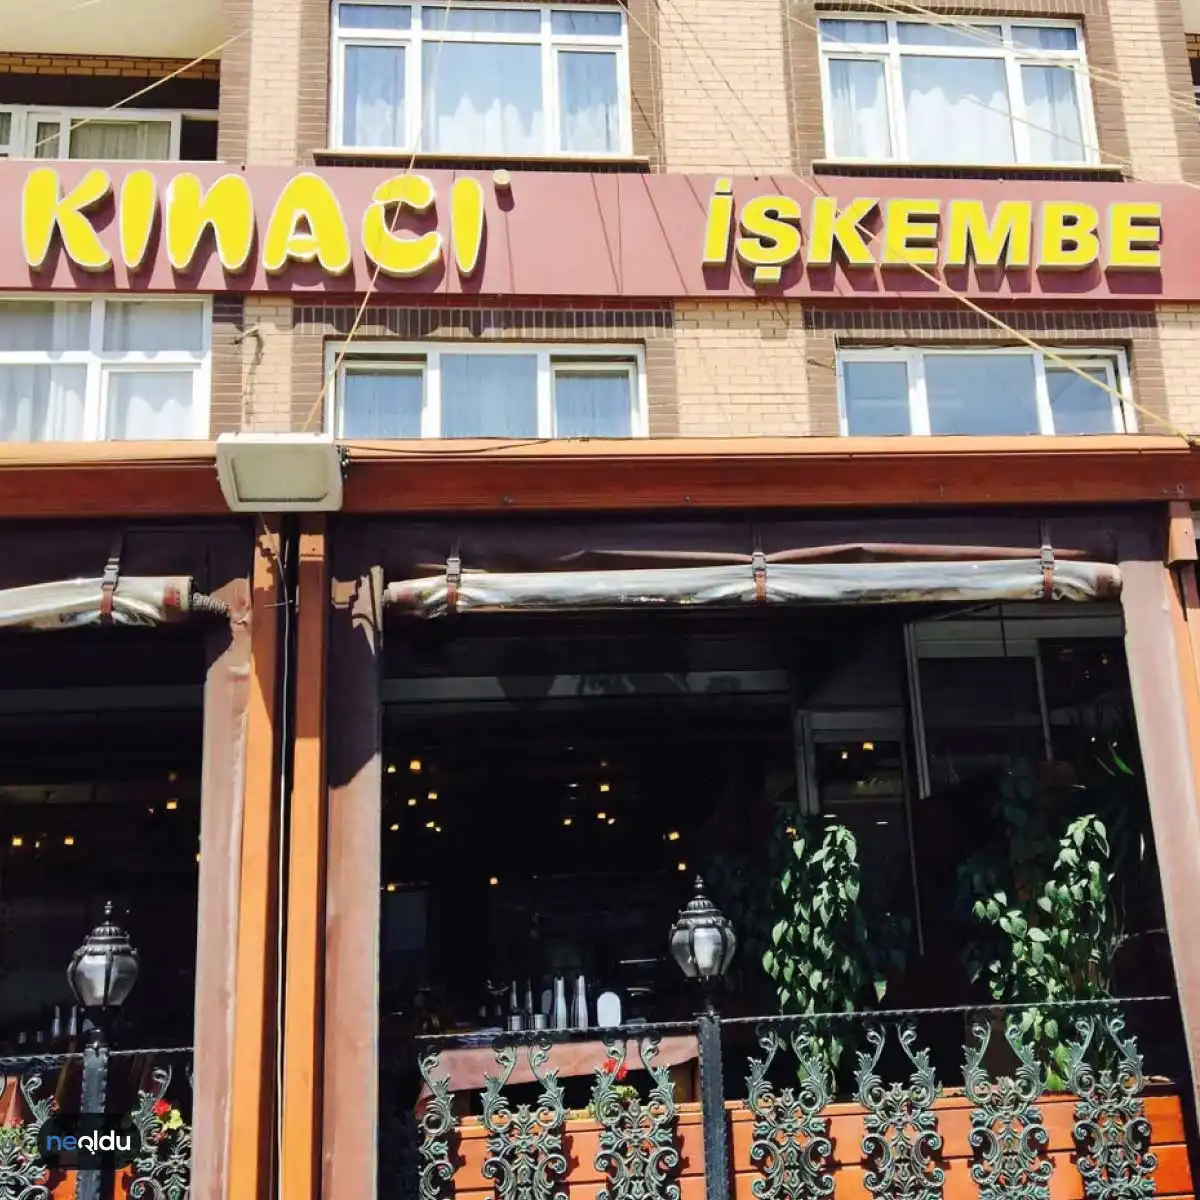 İstanbul'un En İyi İşkembe Çorbacısı